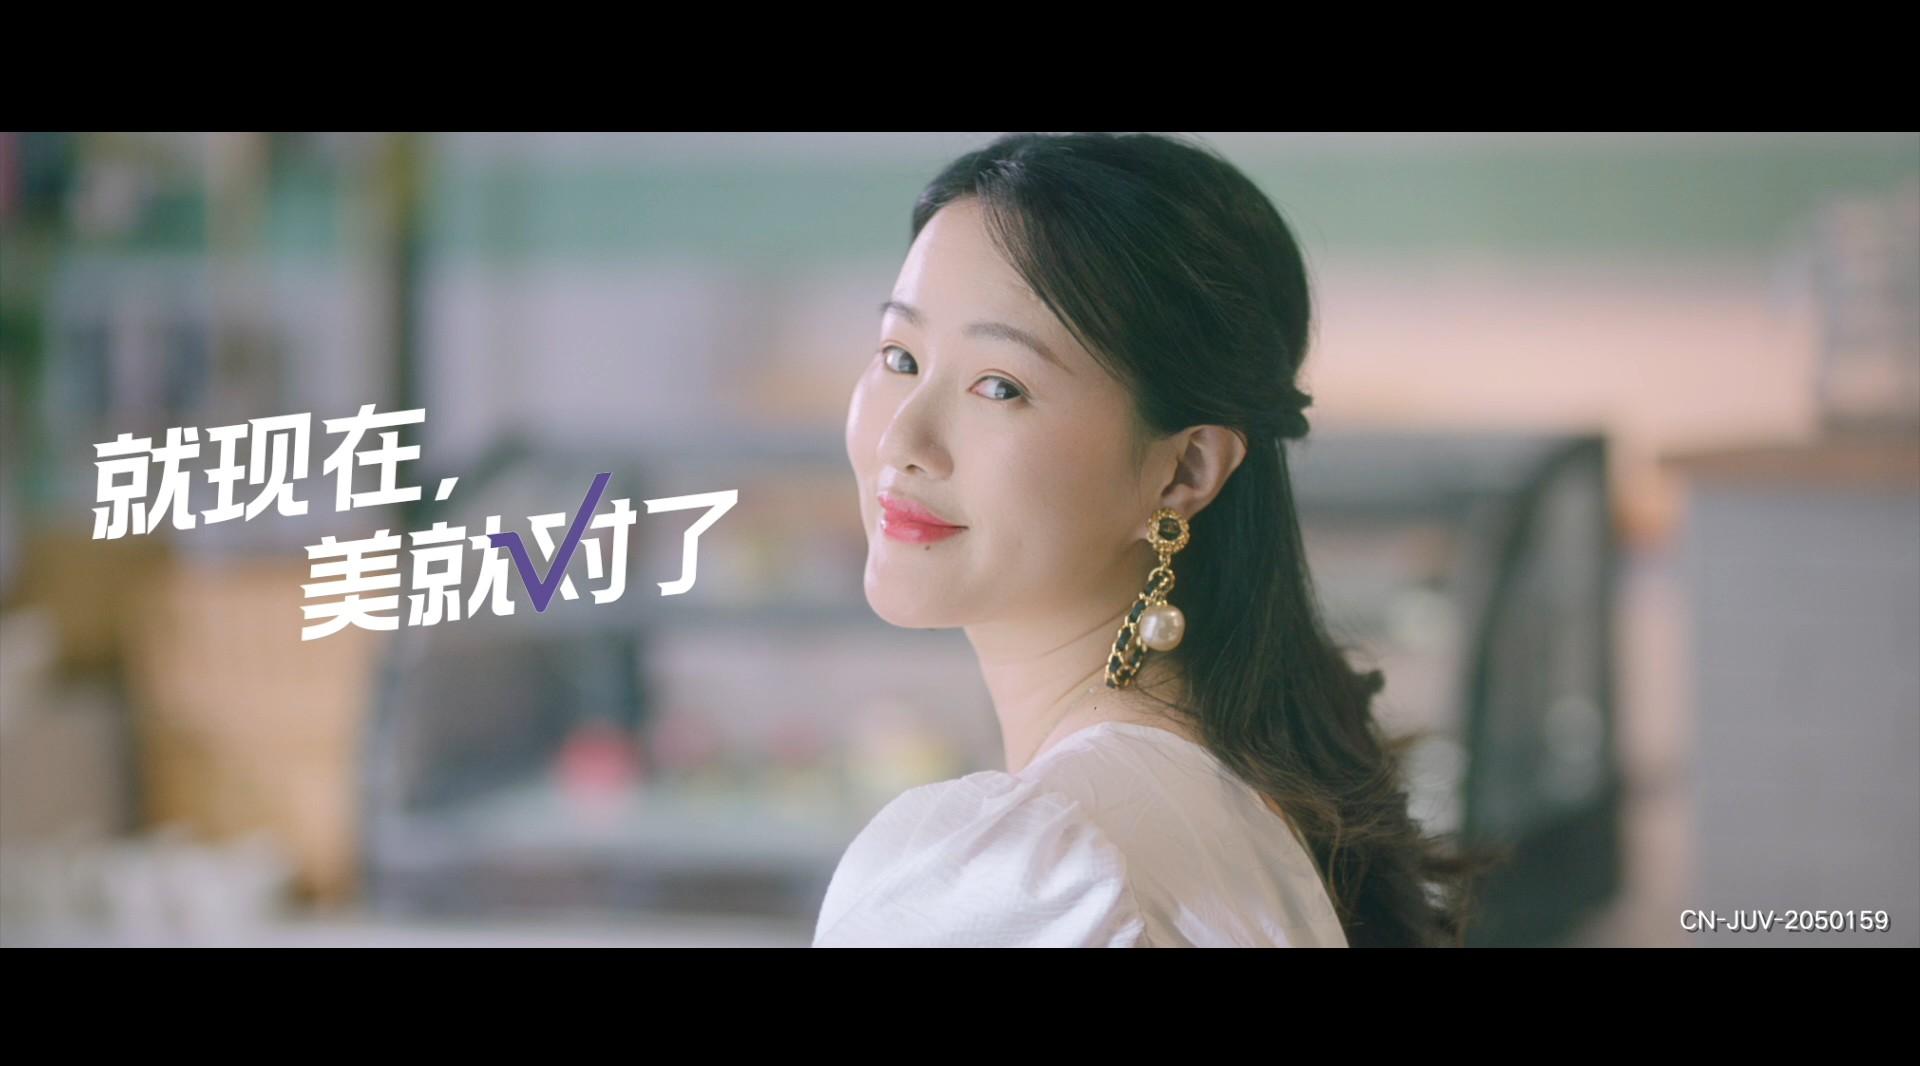 乔雅登 《美就对了》系列视频 刘小葵篇